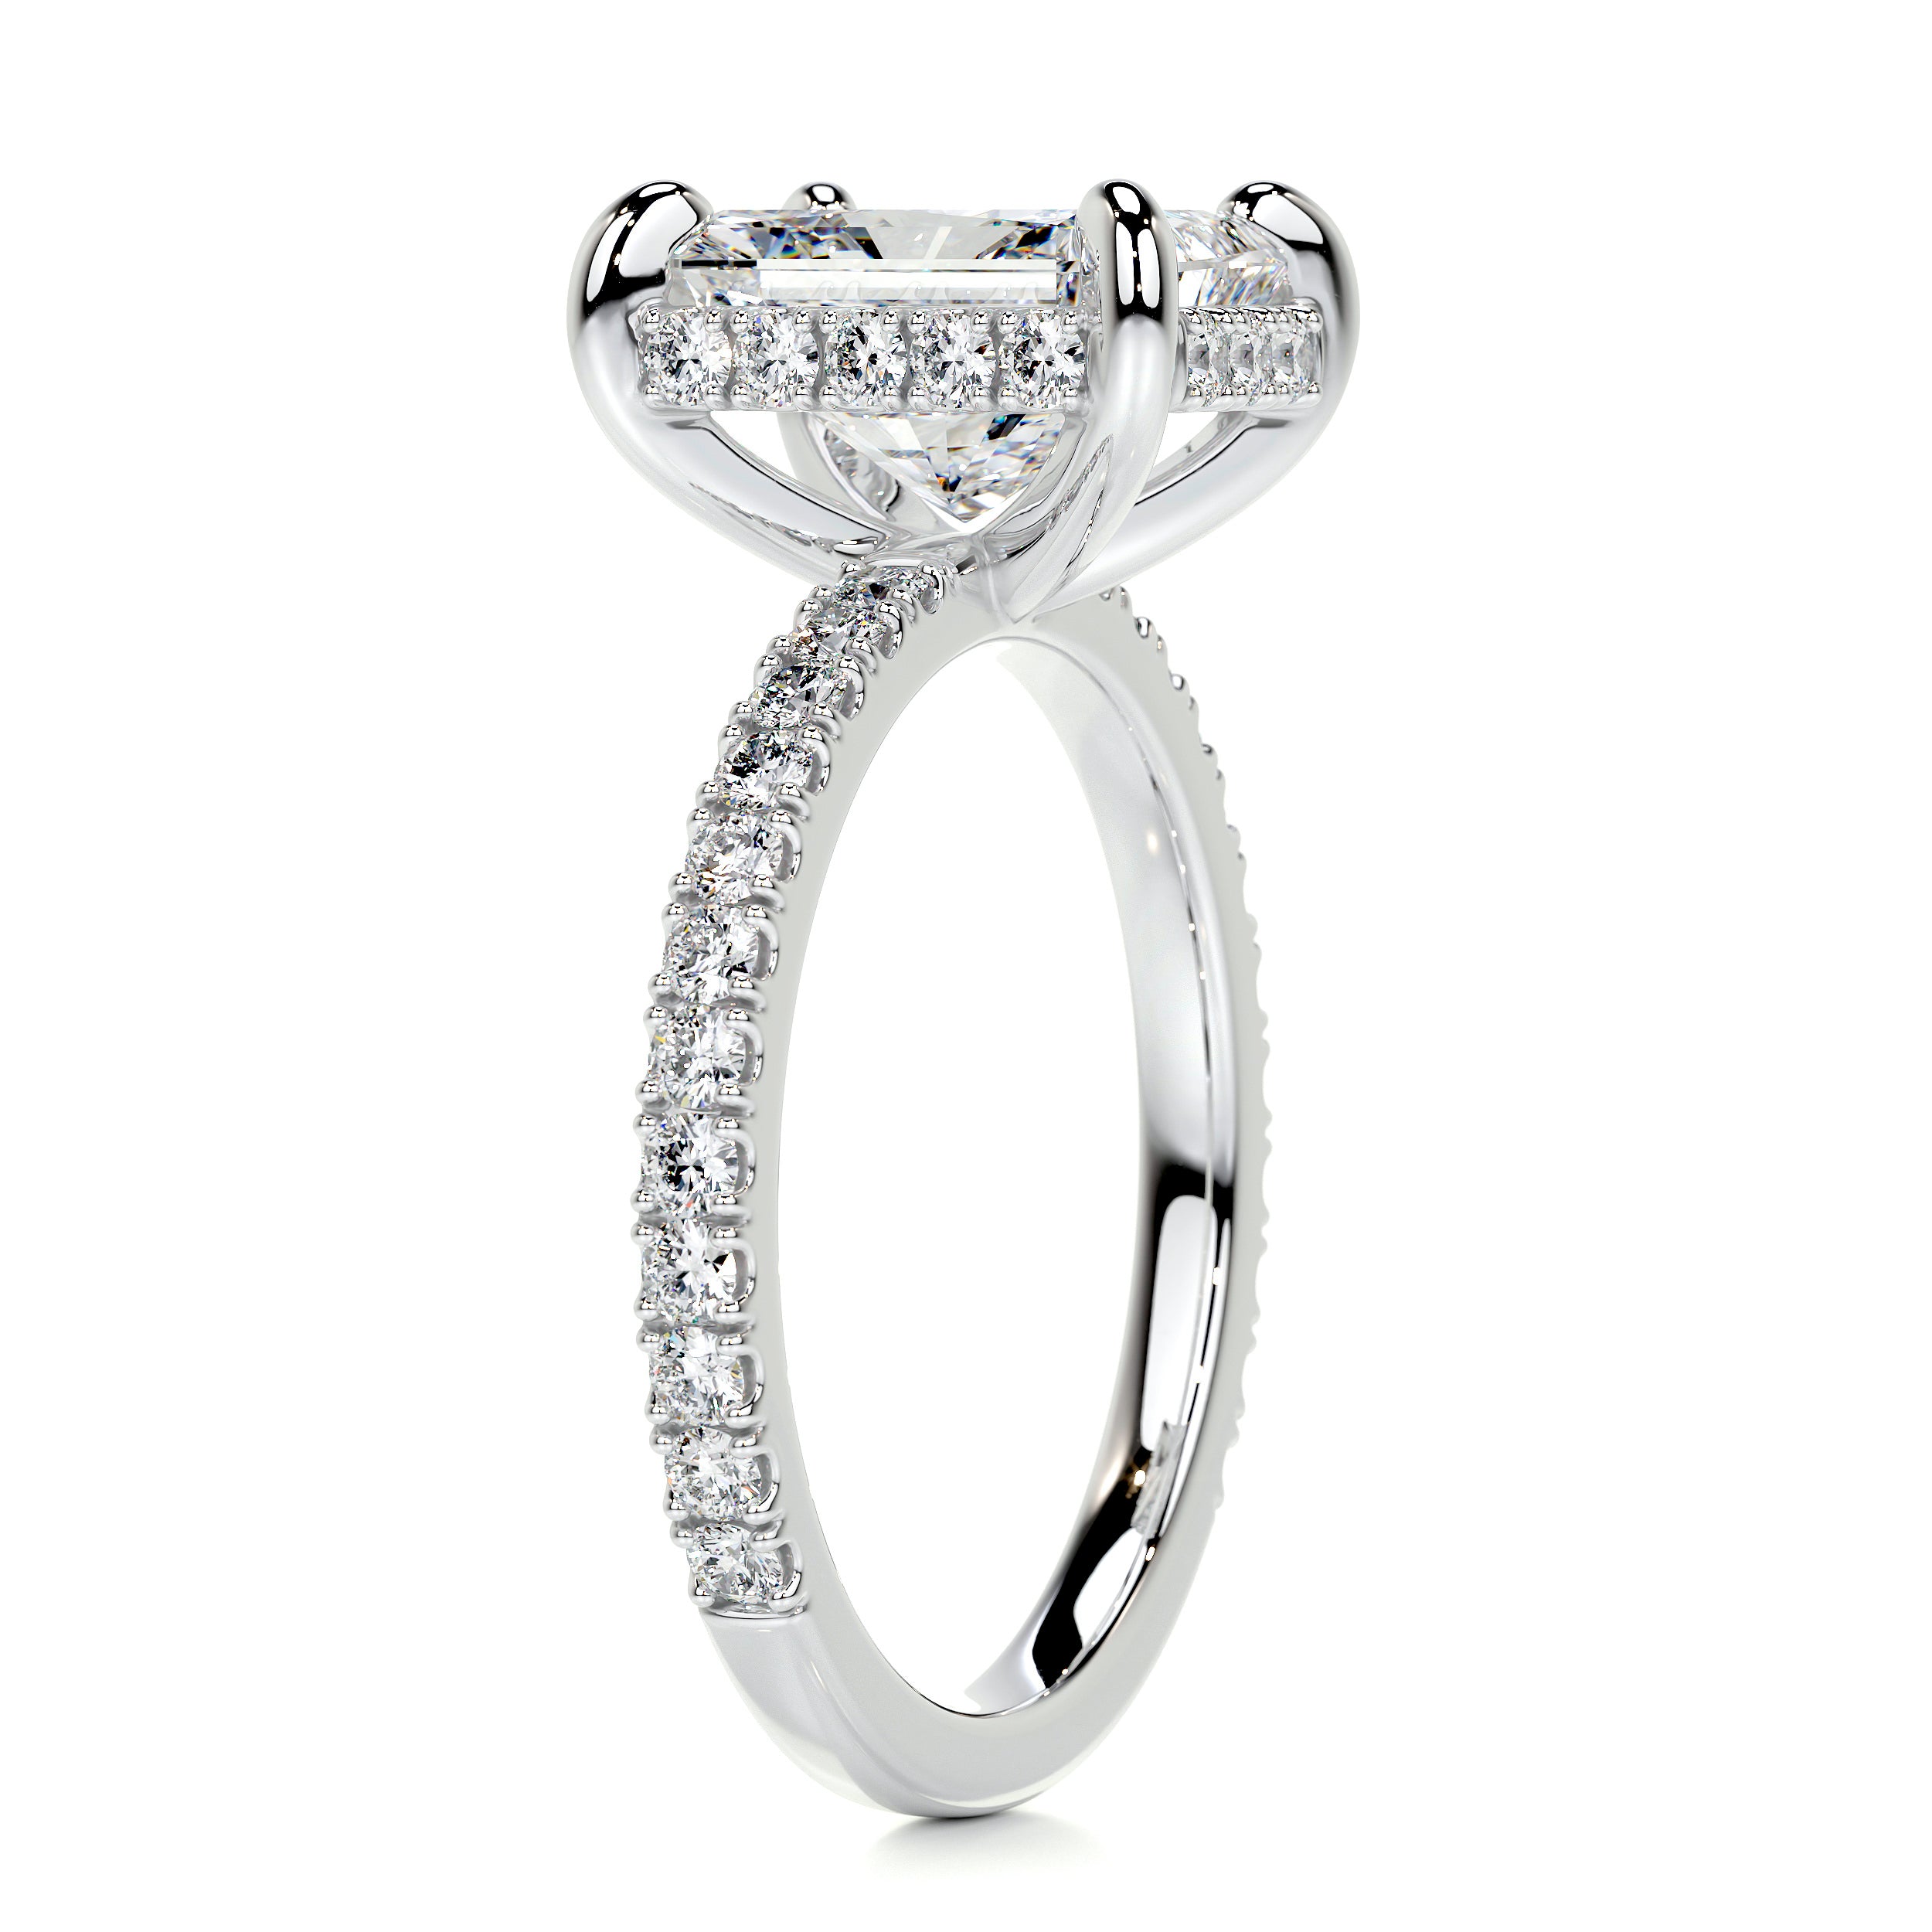 Luna Diamond Engagement Ring   (2.5 Carat) -14K White Gold